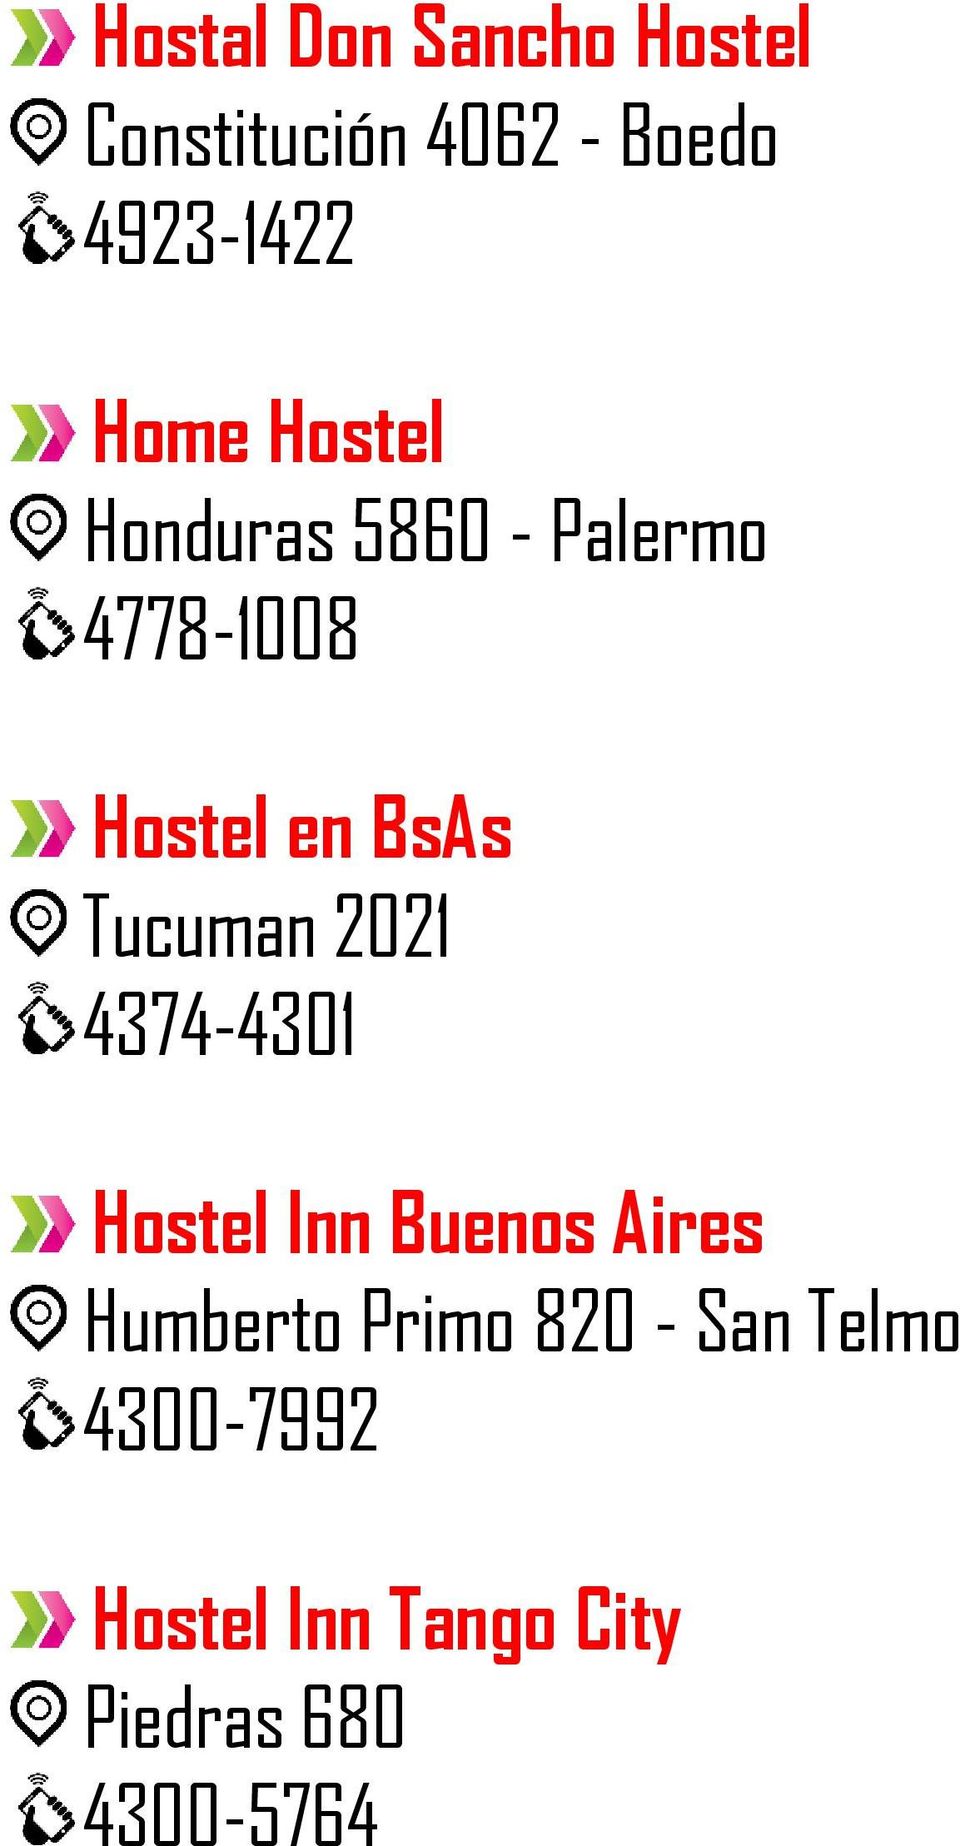 Tucuman 2021 4374-4301 Hostel Inn Buenos Aires Humberto Primo